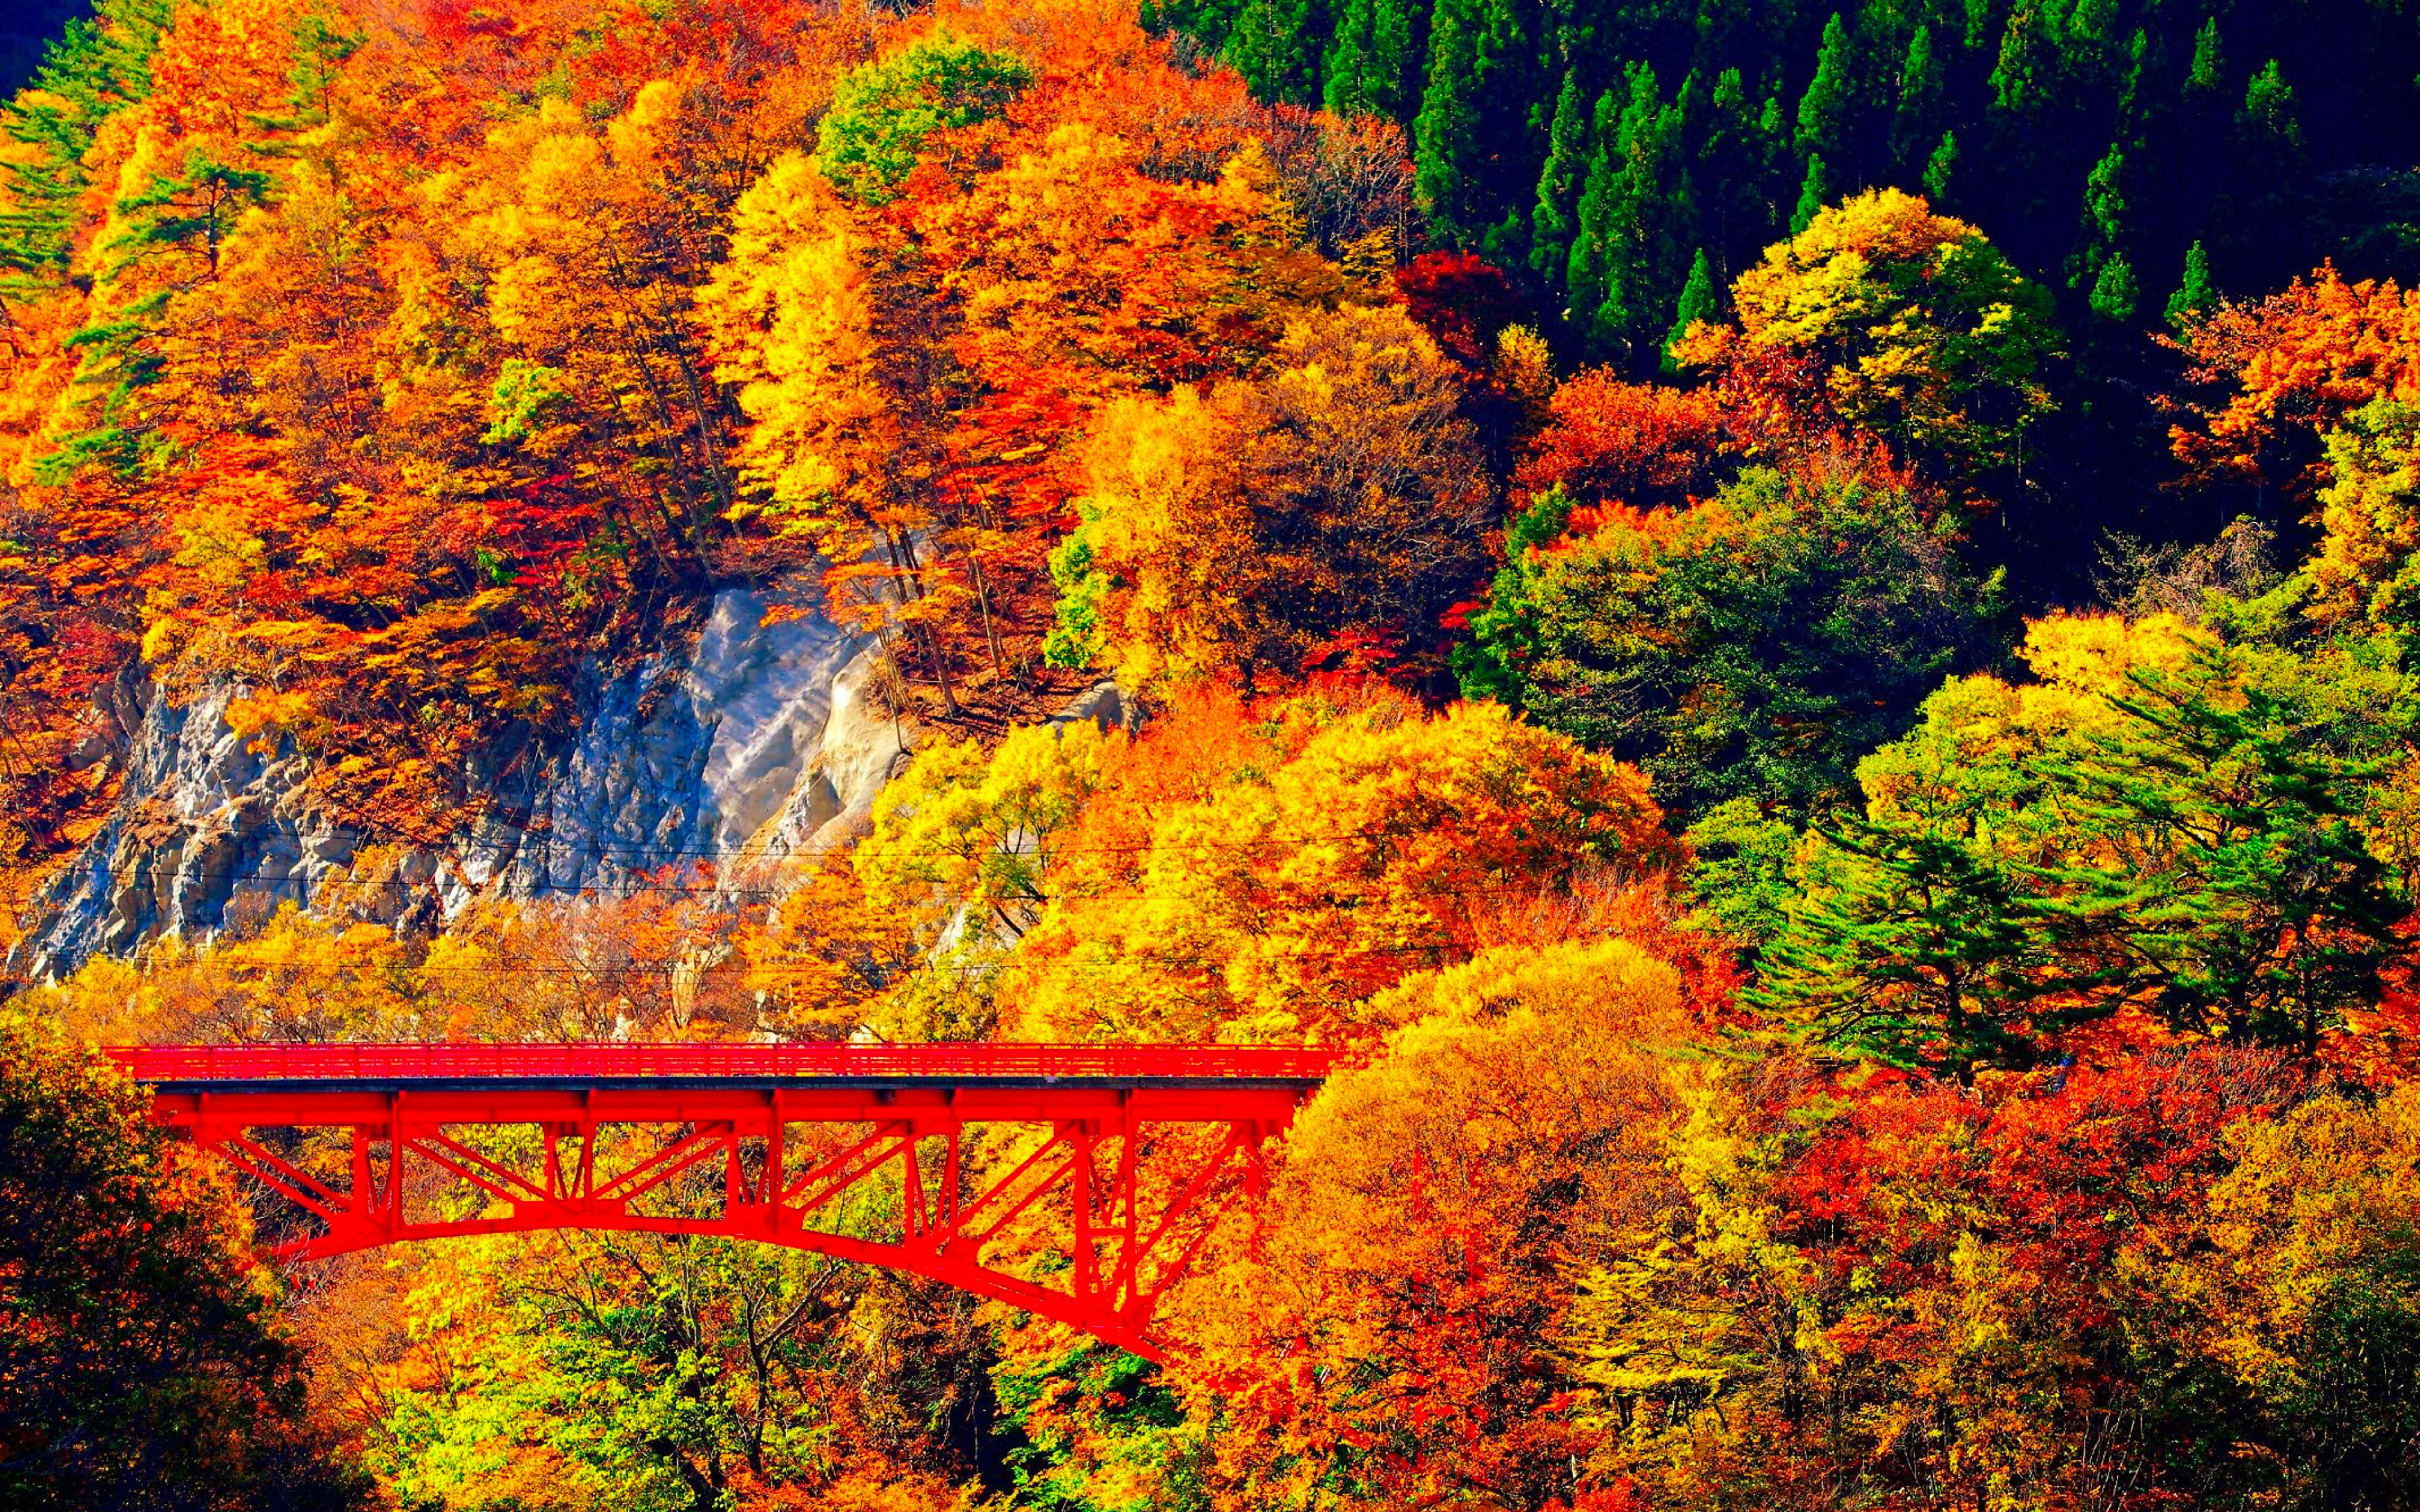 長野県の紅葉スポット第1位「松川渓谷」は山田温泉ゲートウェイ「高井橋」です